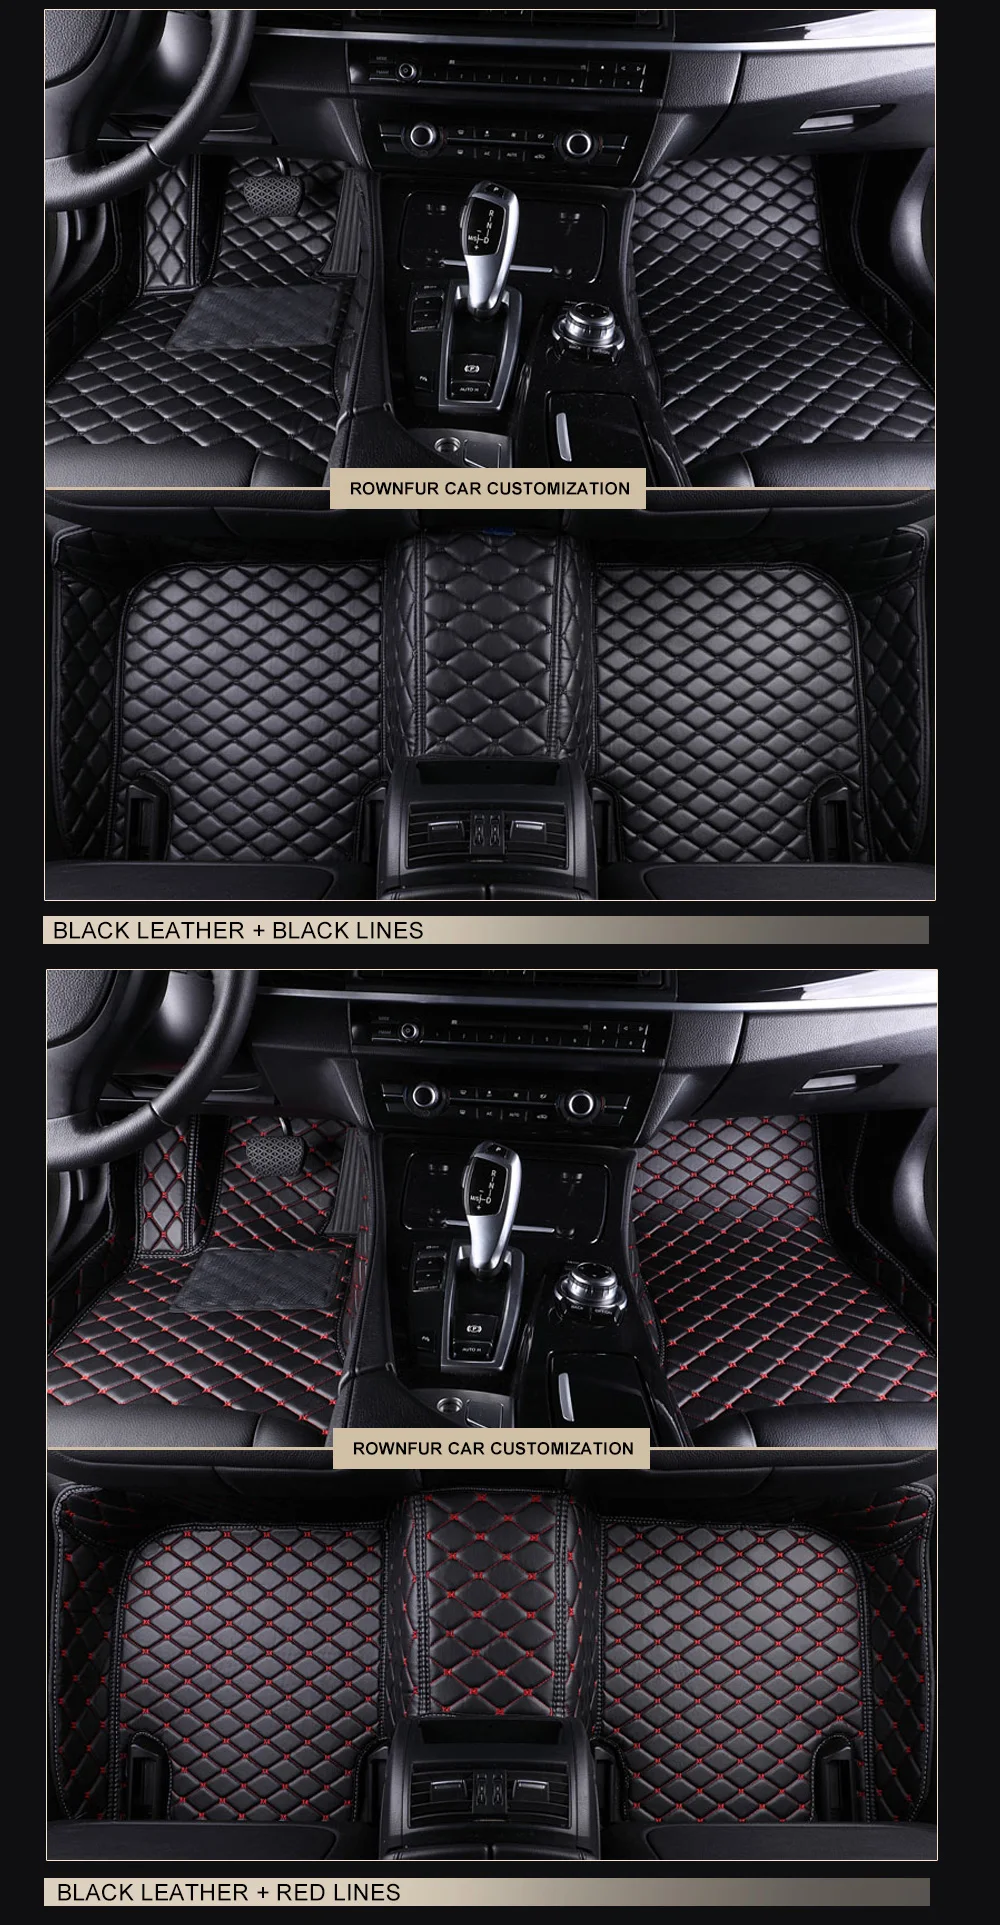 Коврики в машину Коврики для авто автотовары аксессуары для авто 3D коврик из эко-кожи в салон автомобиля для Lexus IS 2005- II III полный комплект на весь салон автомобиля, 6 различных цветов на ваш вкус